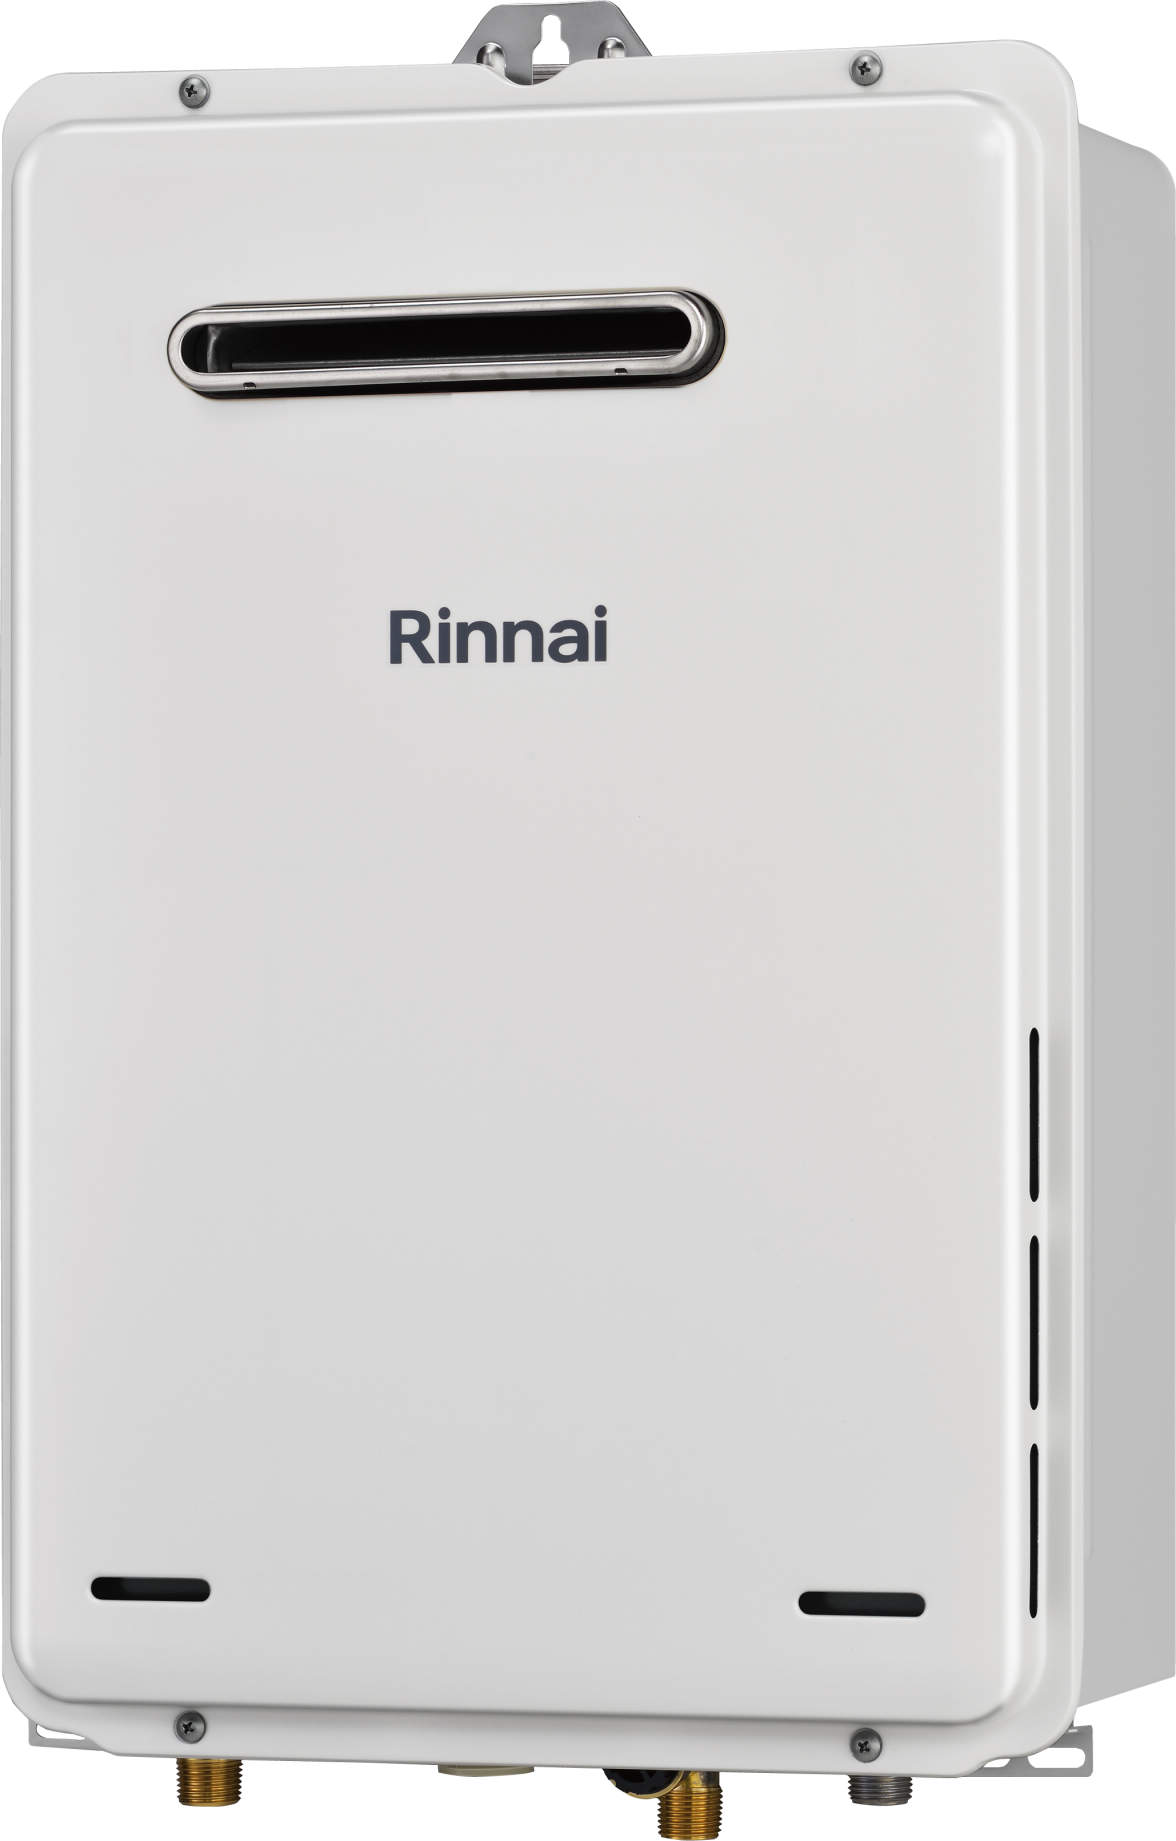 Rinnai(リンナイ) RUX-A1615W(A)-E